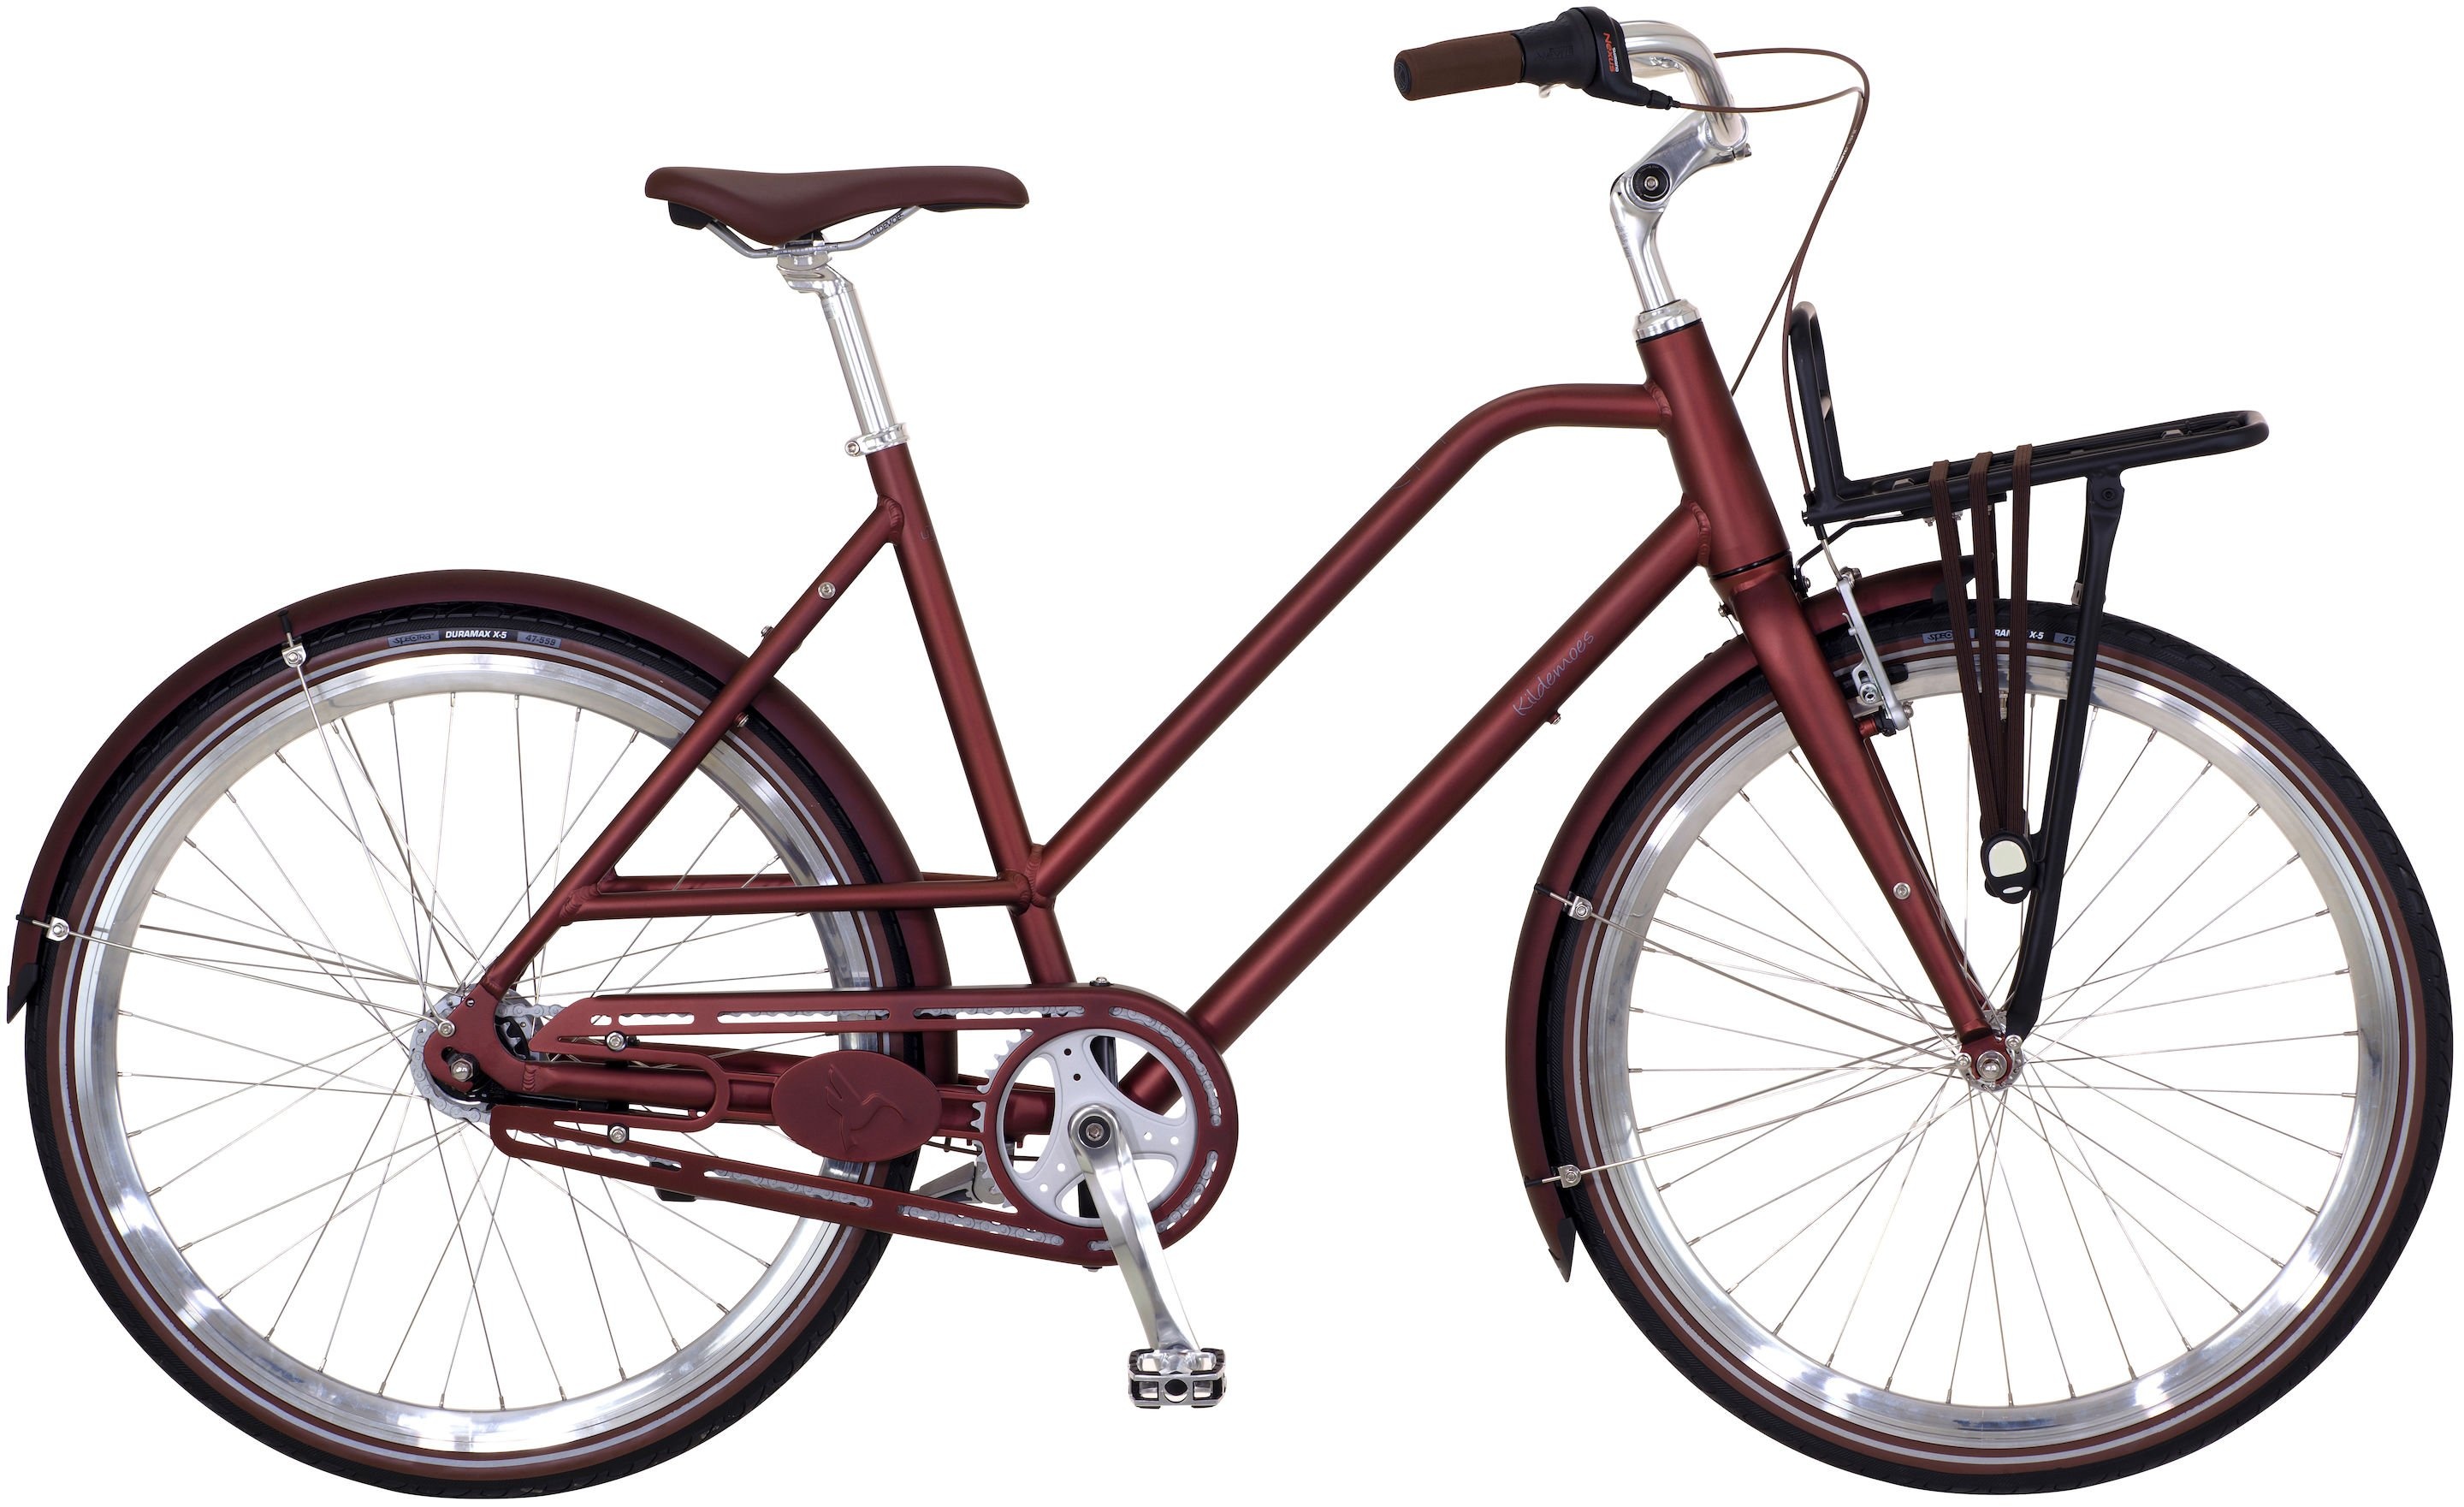 Cykler - Damecykler - Kildemoes Urban Core 7g Dame 2019 - Rød